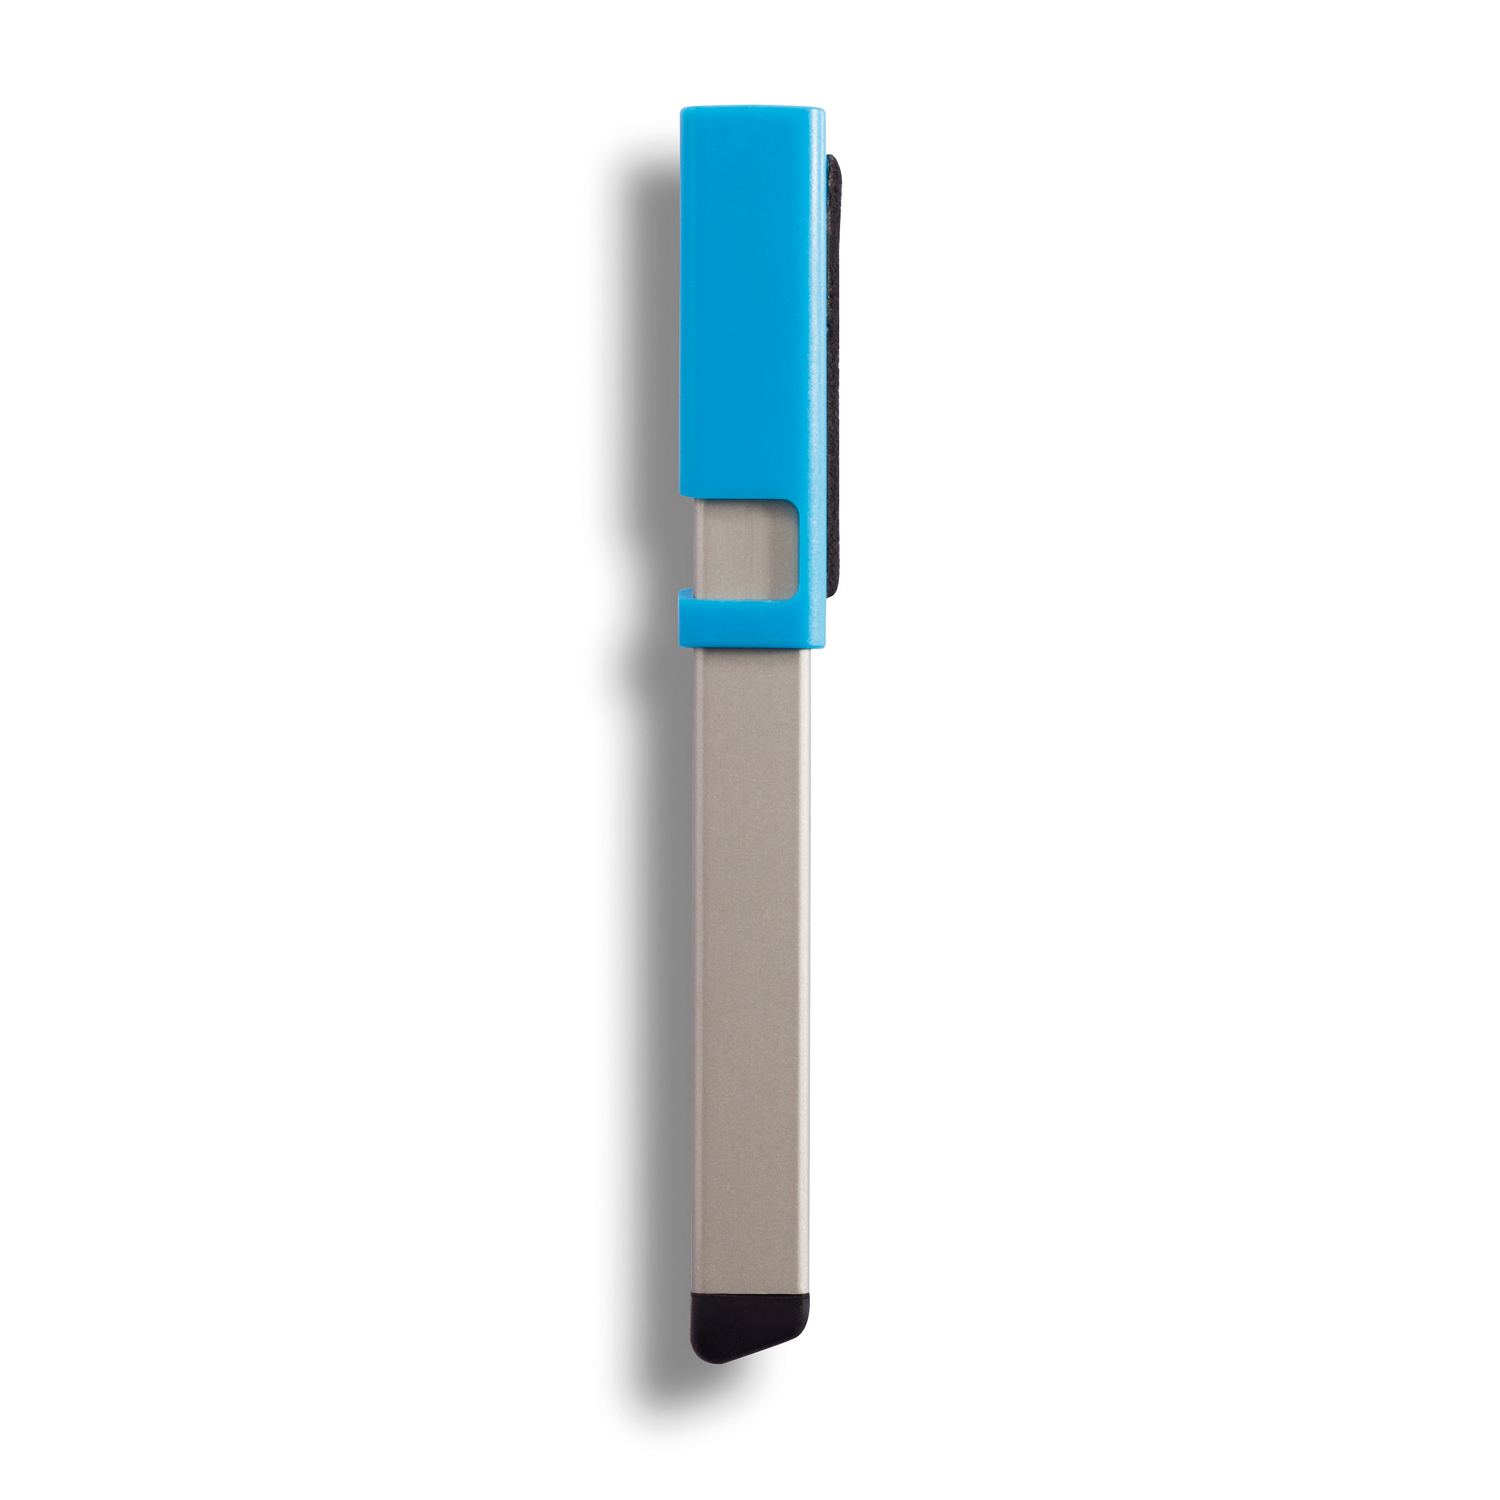 Ручка-стилус Kube 4 в 1, синий